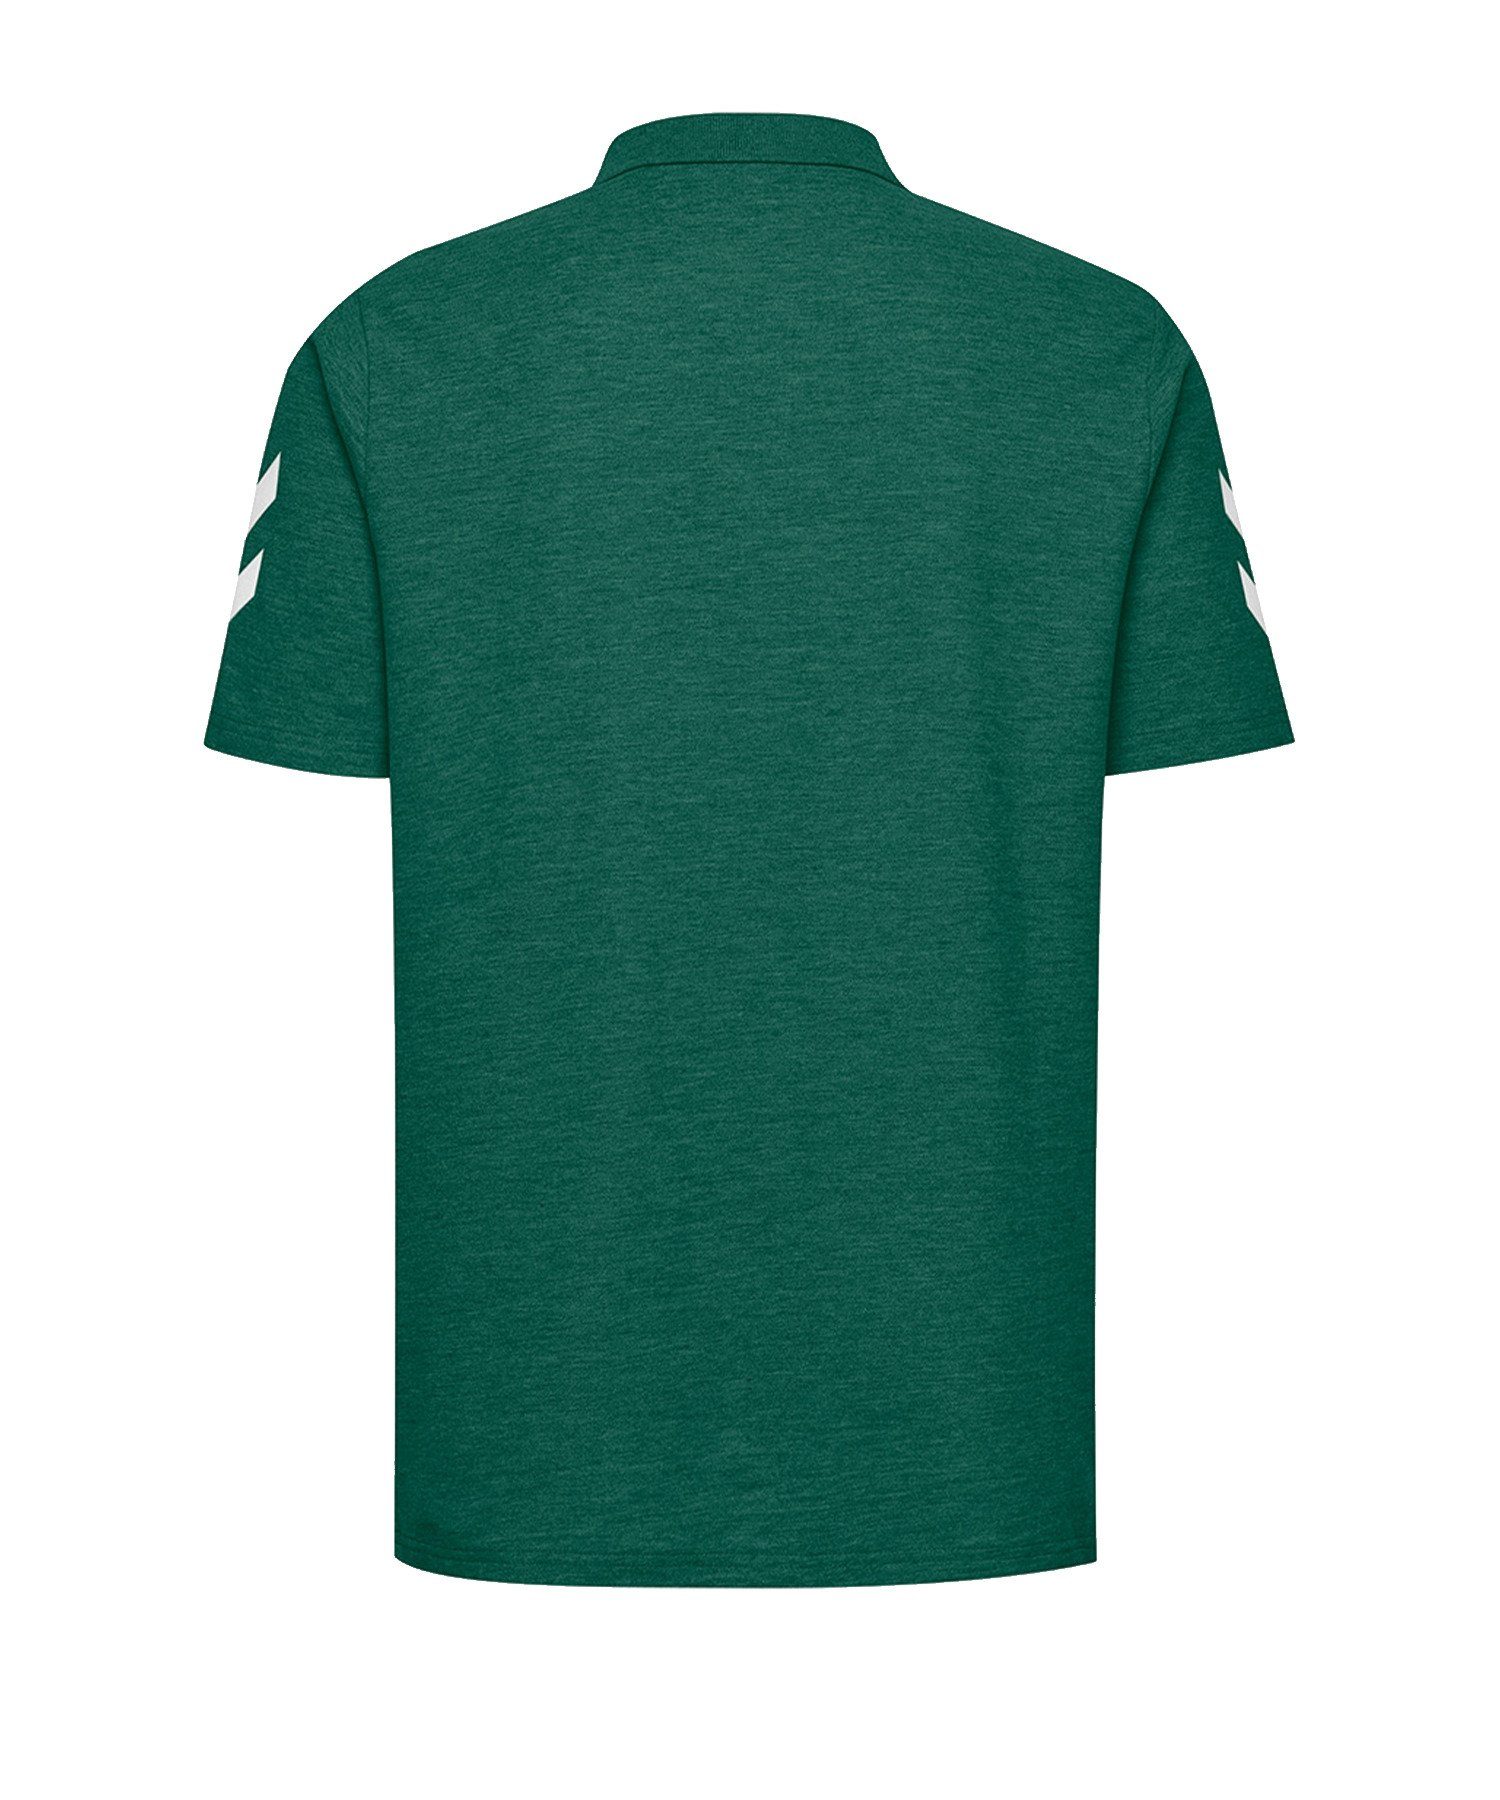 Poloshirt Cotton default Gruen T-Shirt hummel